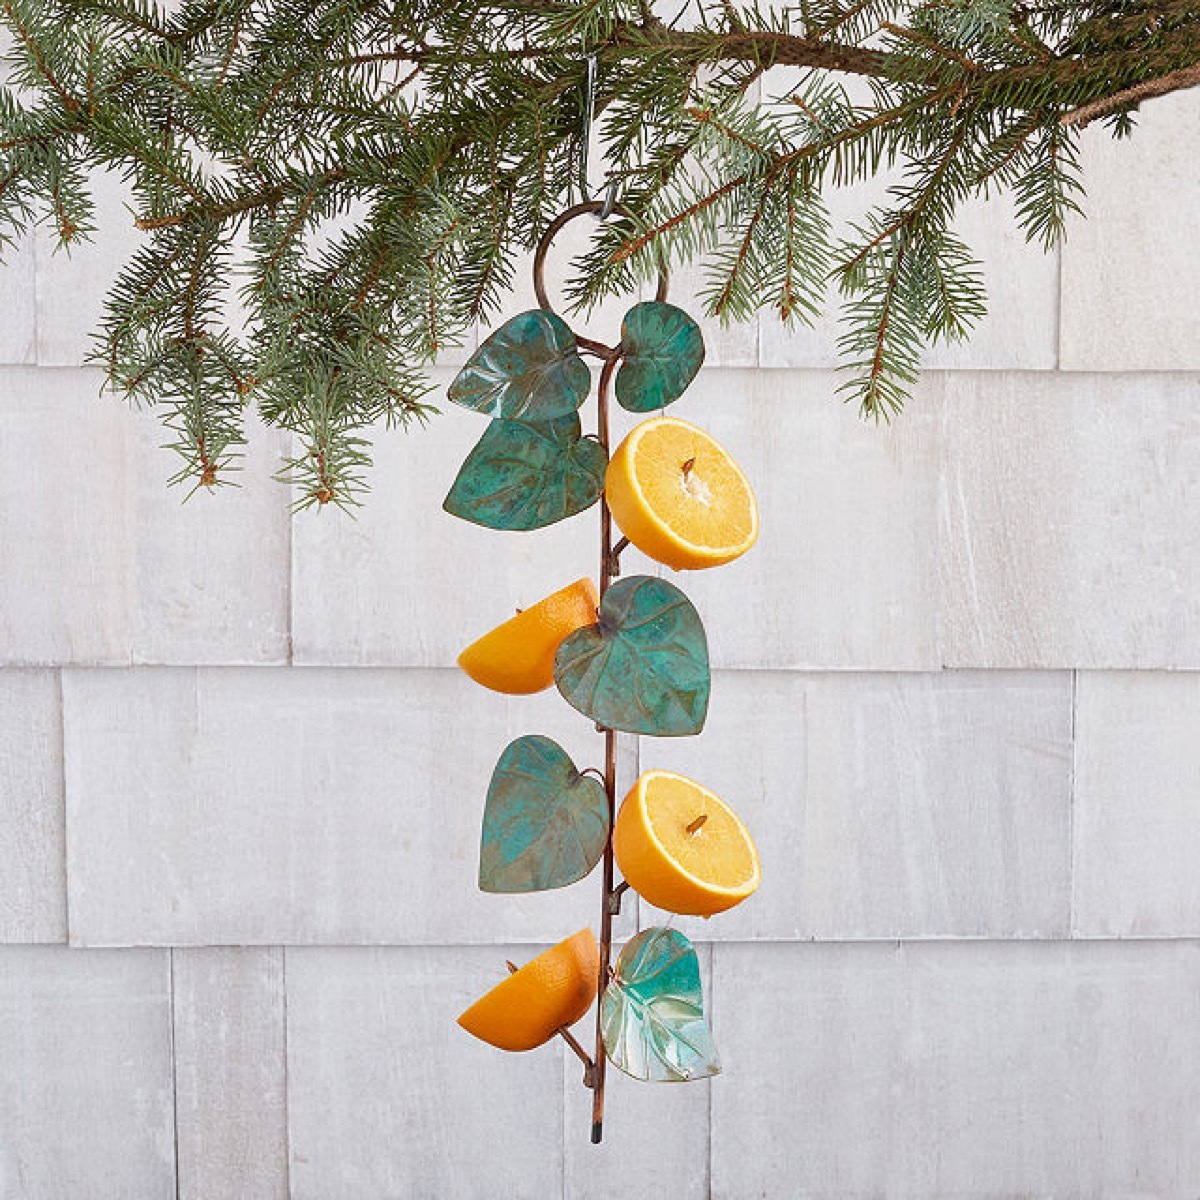 birdie fruit feeder with metal leaves and orange halves